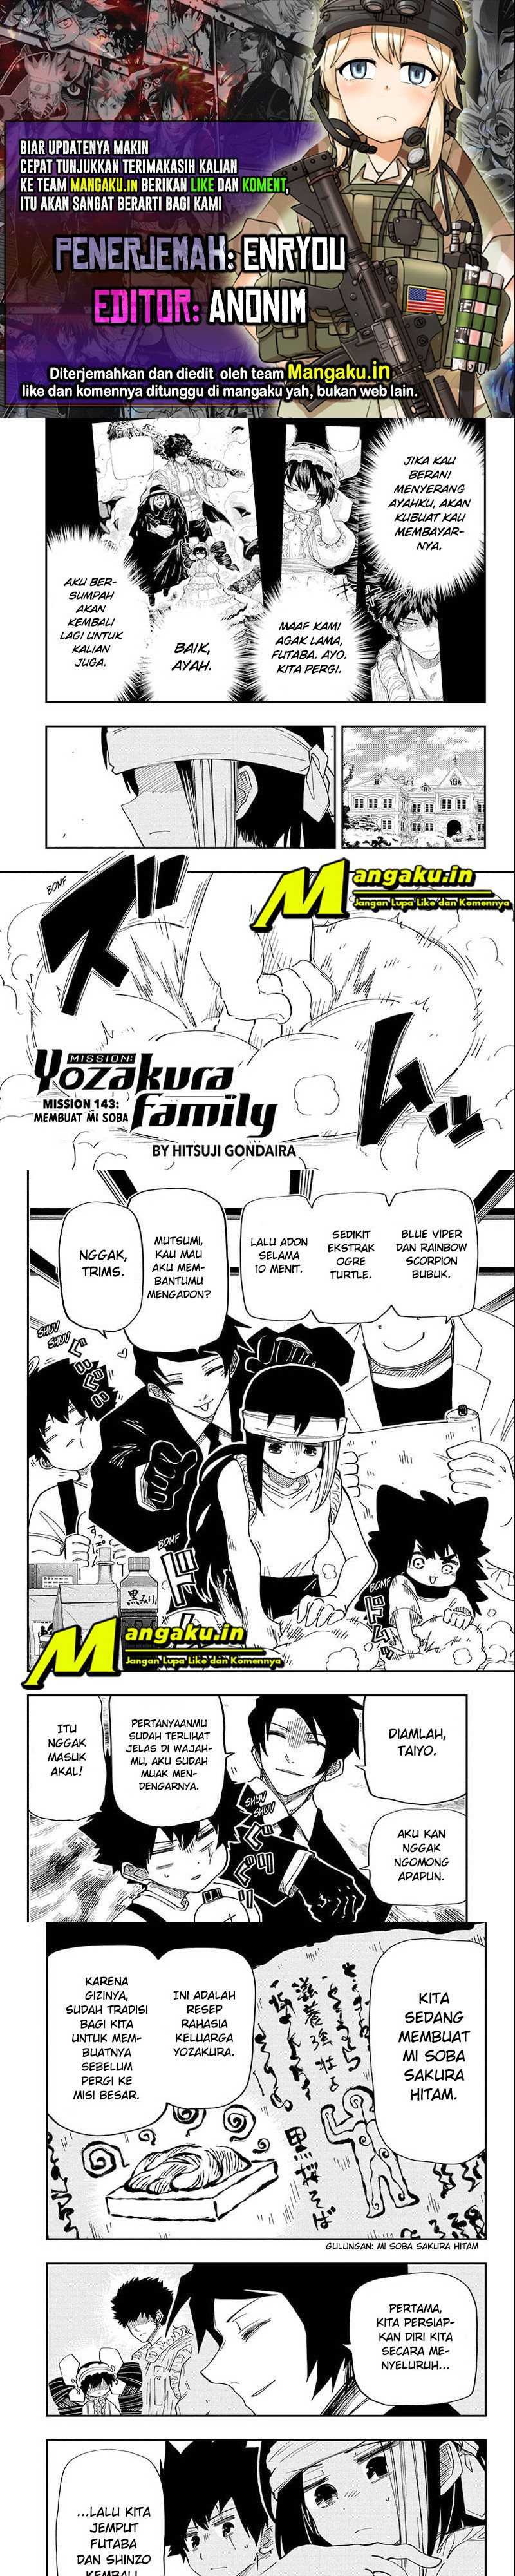 Mission Yozakura Family Chapter 143